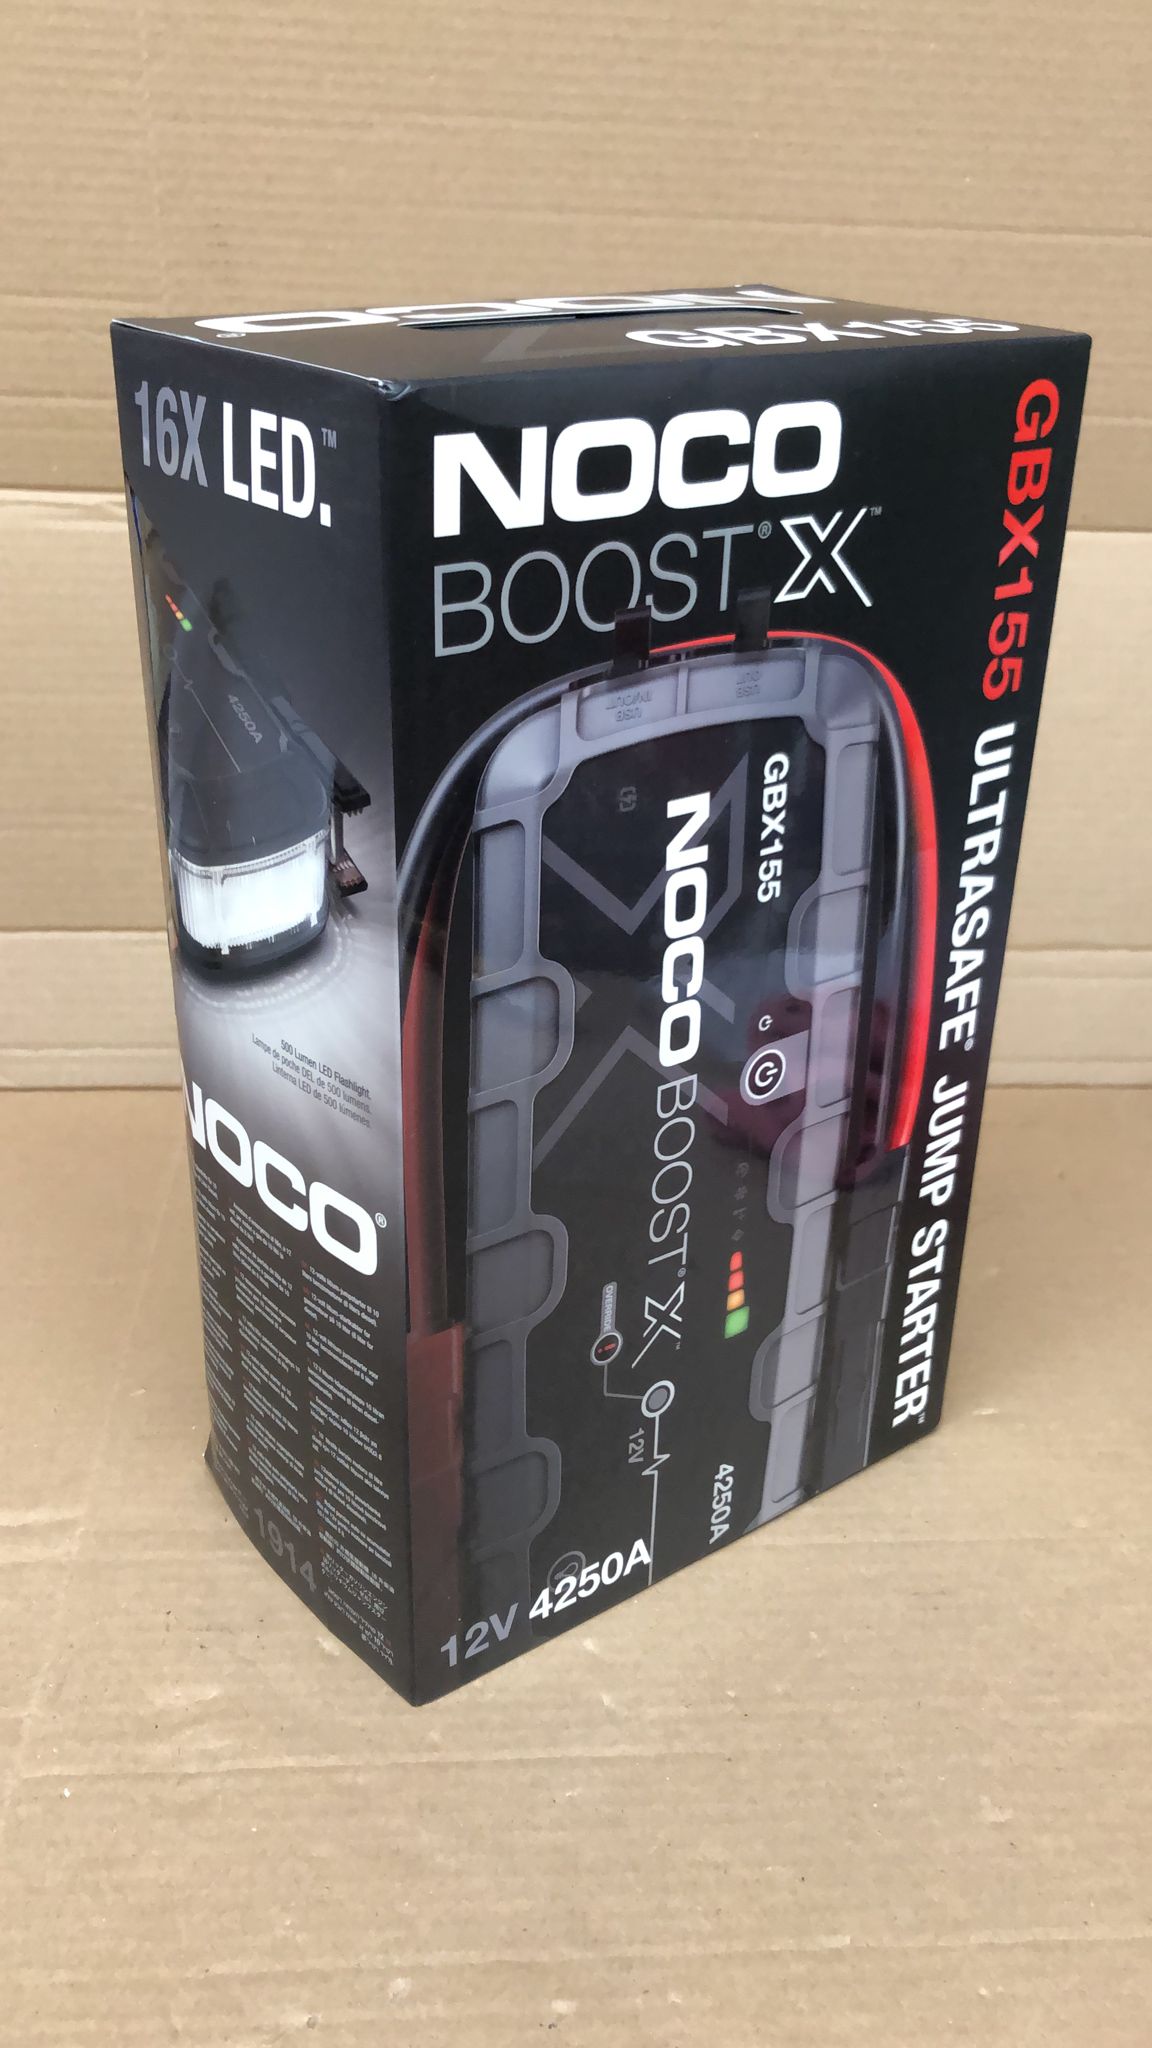 NOCO Boost X GBX155 4250A UltraSafe Car Jump Starter, Jump Starter Power Pack-4250